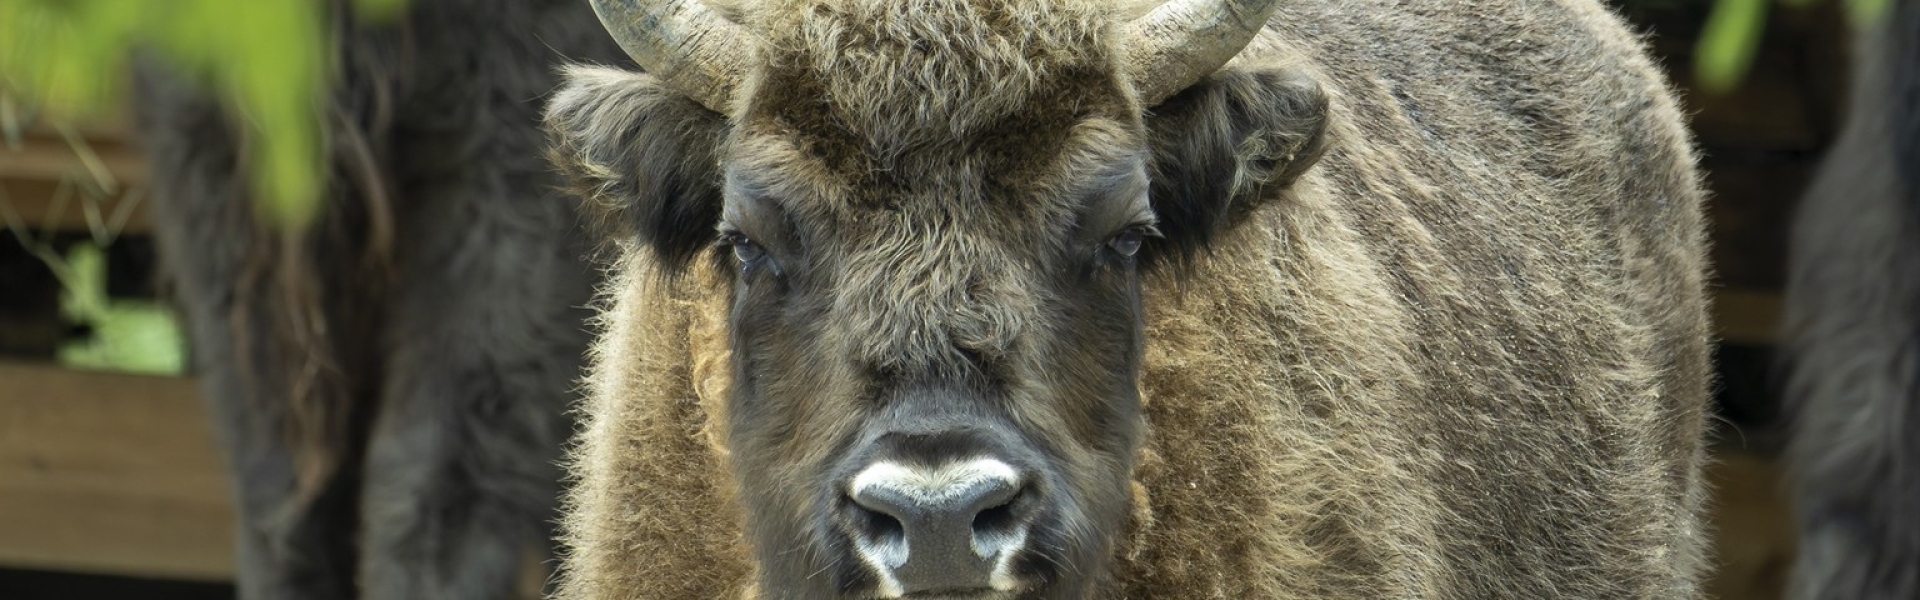 European bison 